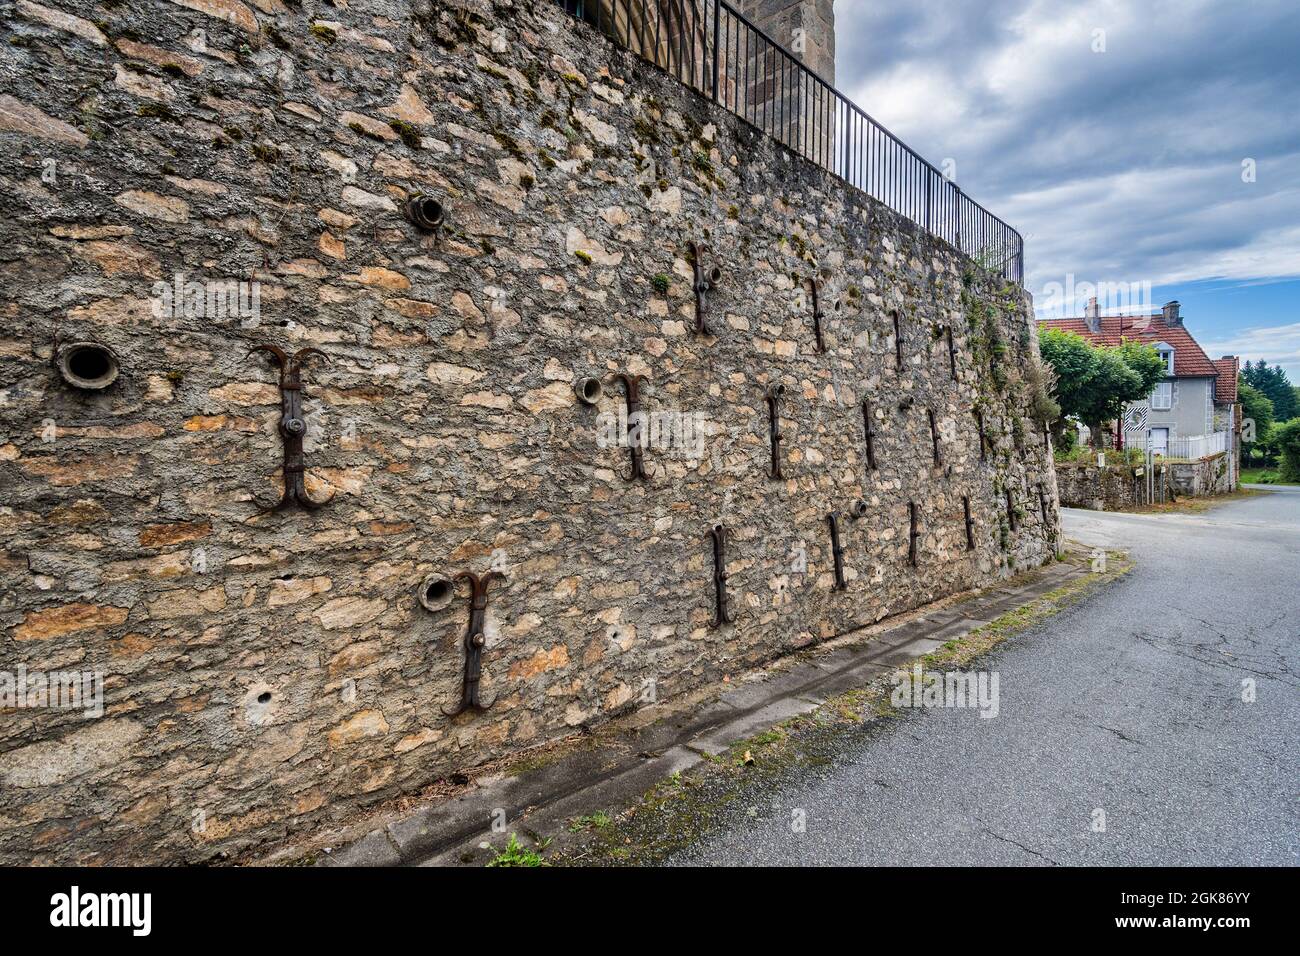 Plusieurs bandes de retenue en fer dans le mur en dessous de l'église Saint Michel Archange, Fleurat, Creuse (23), France. Banque D'Images